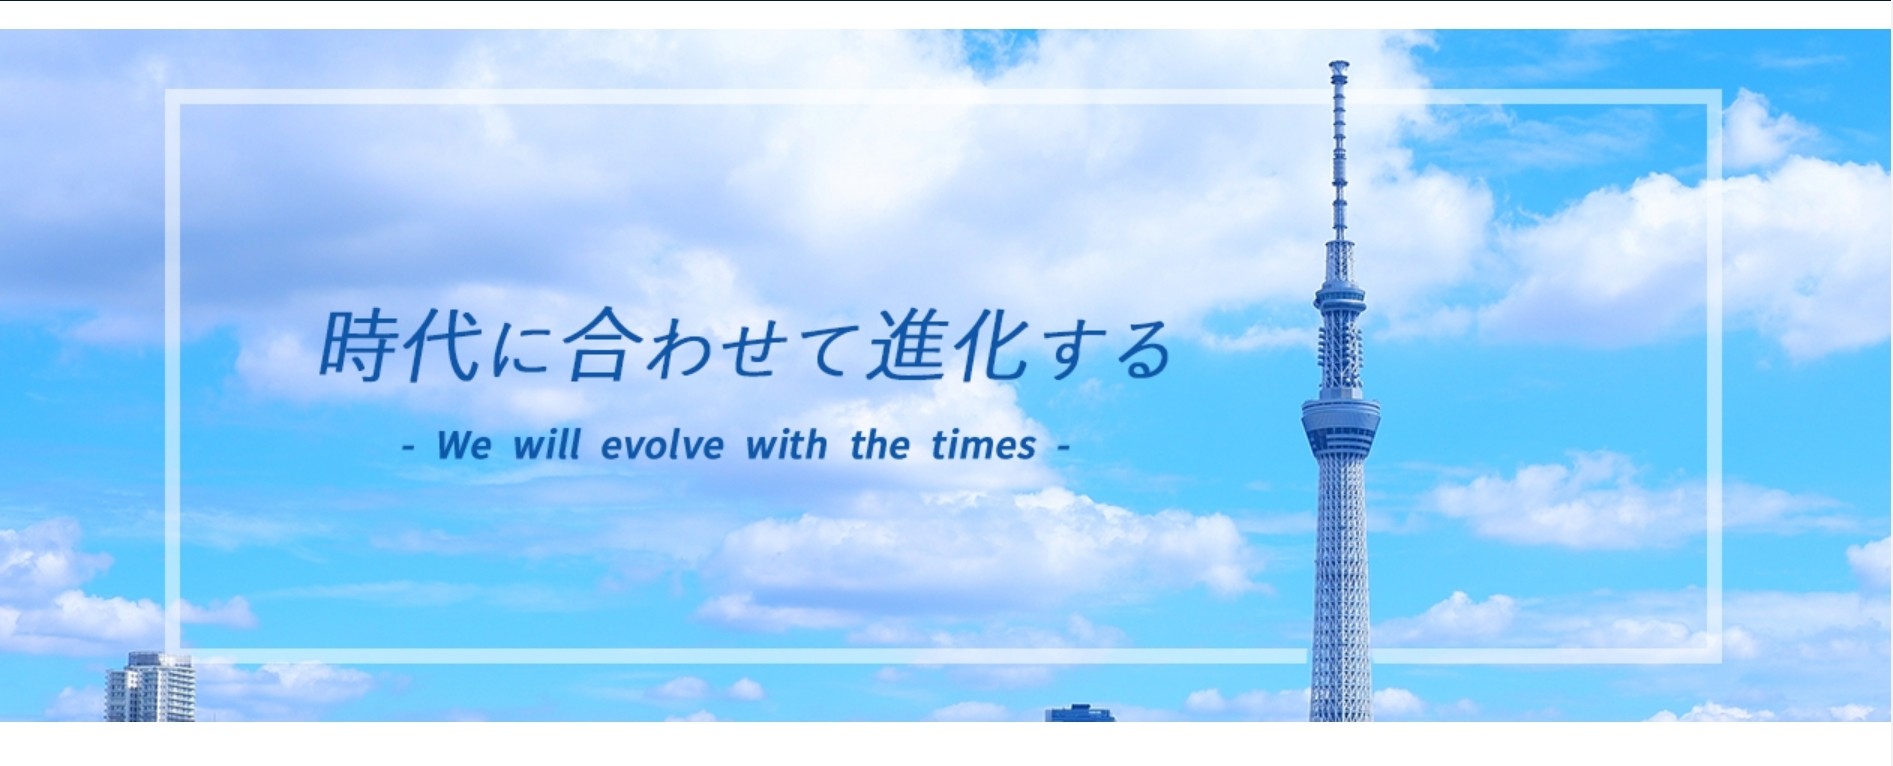 田中電気株式会社の田中電気株式会社:ビジネス・オフィスソフトサービス